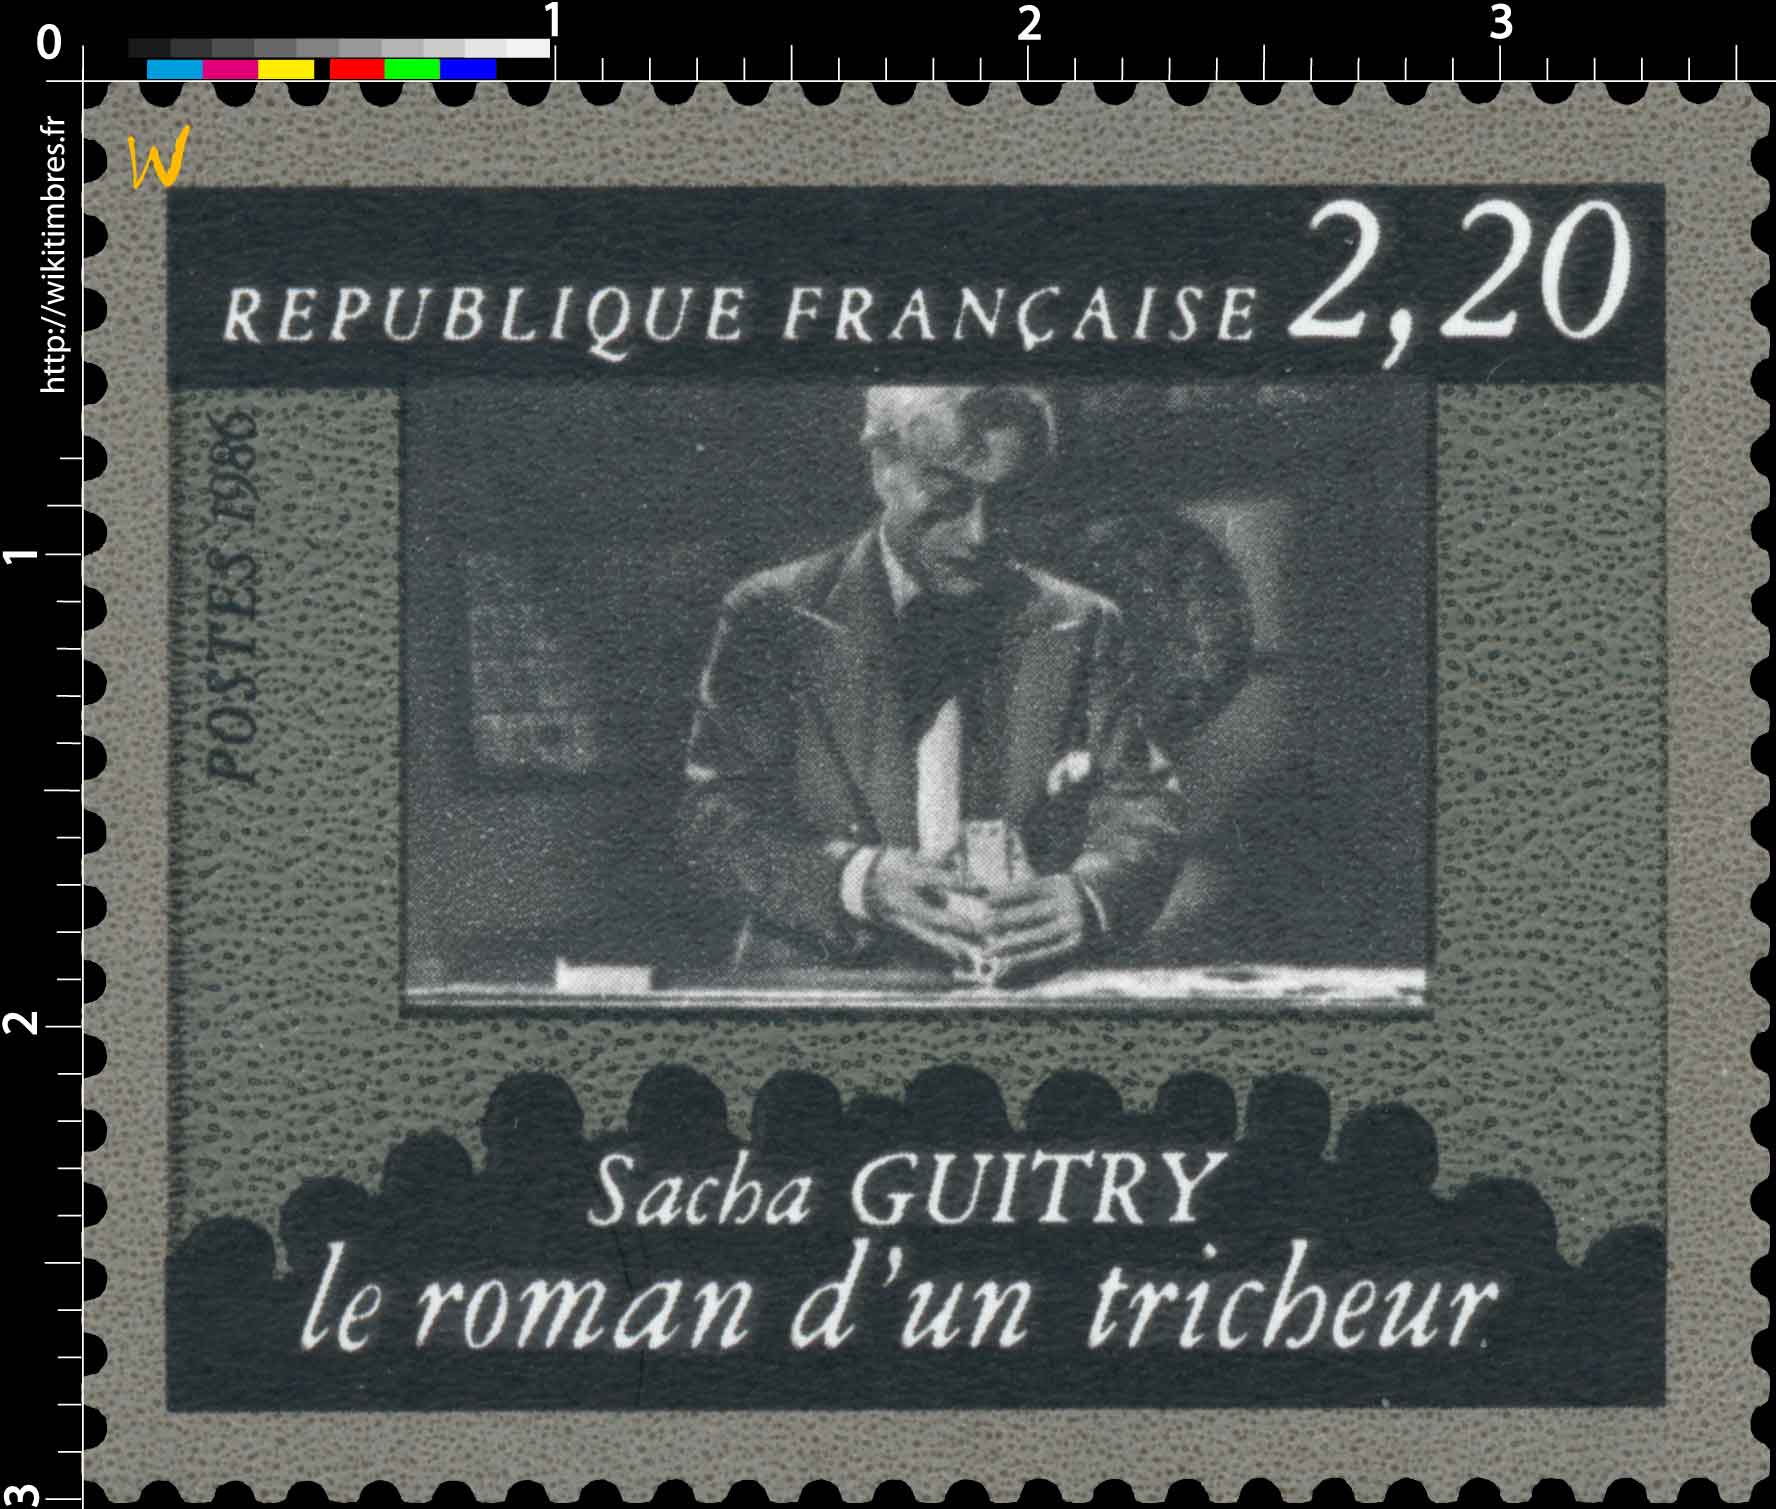 1986 Sacha GUITRY le roman d'un tricheur